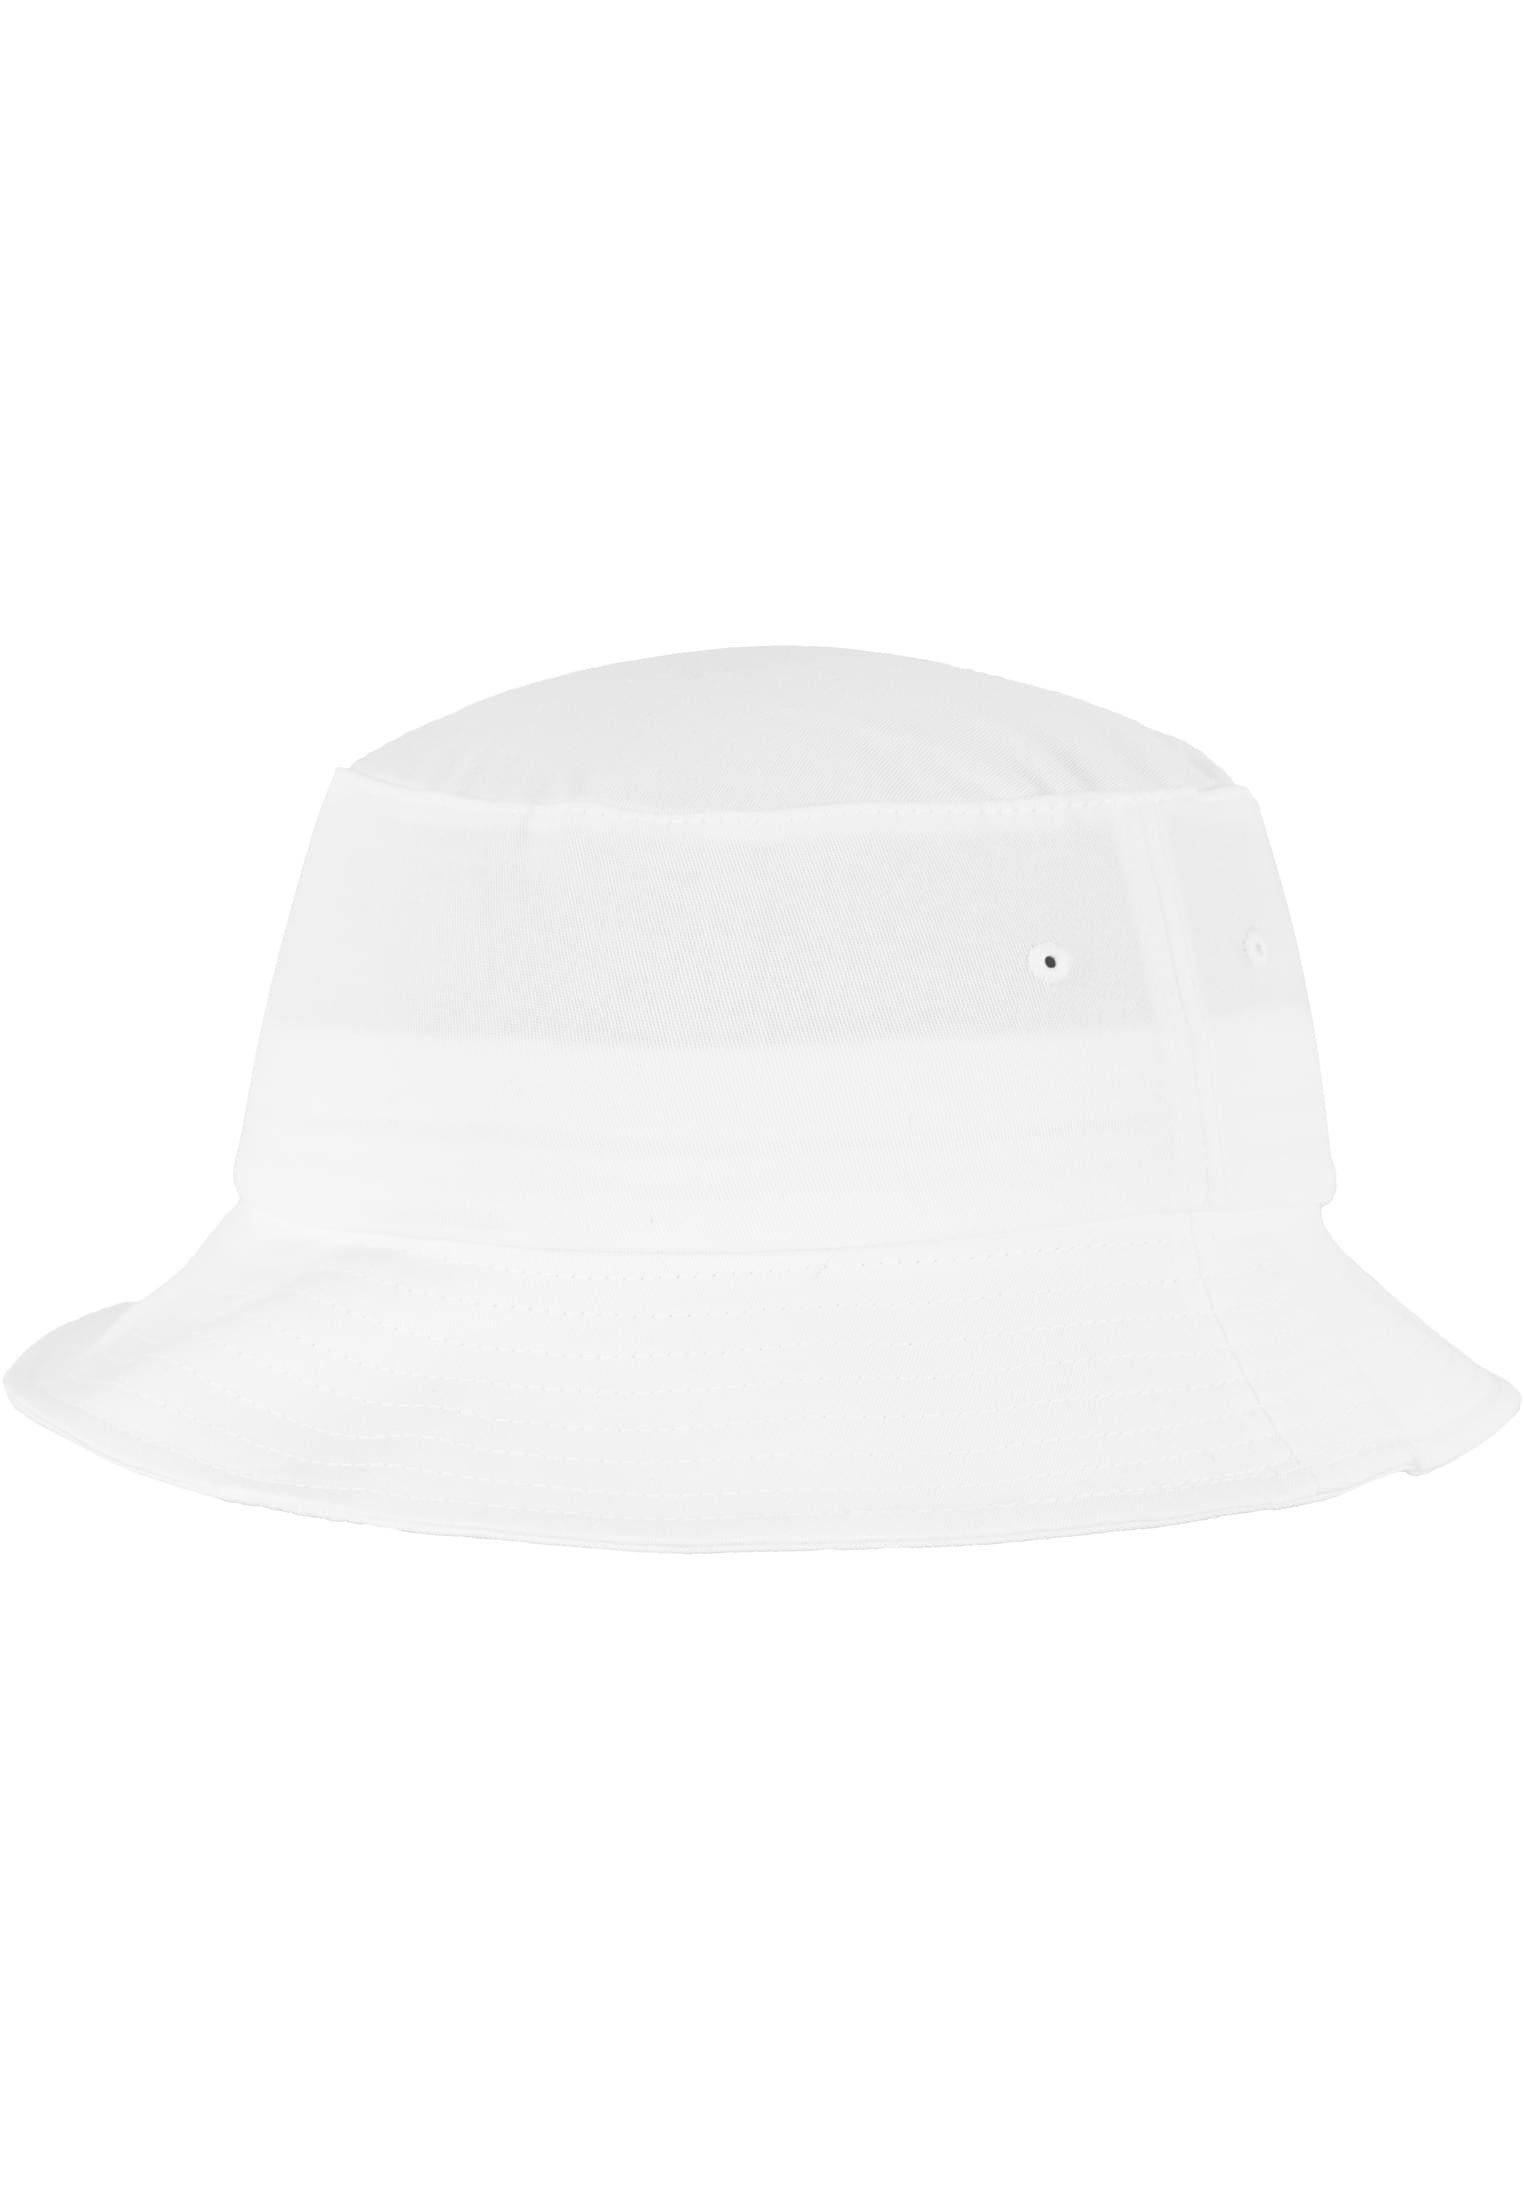 Hat Accessoires Cotton Bucket Flexfit Flex white Cap Flexfit Twill